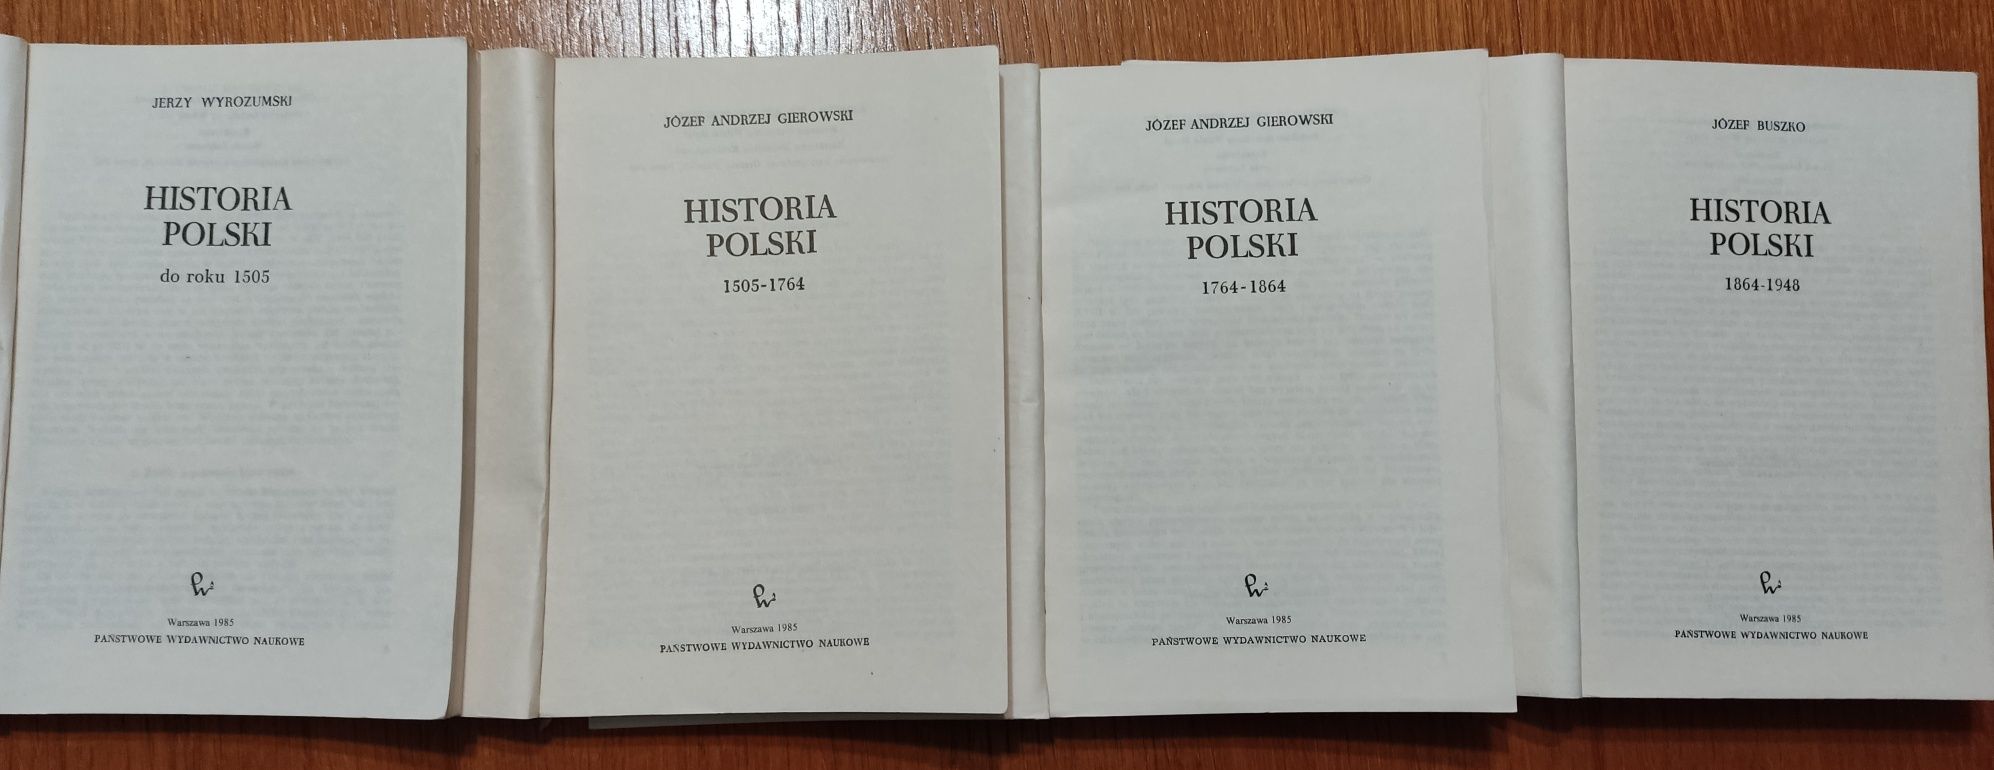 Historia Polski PWN